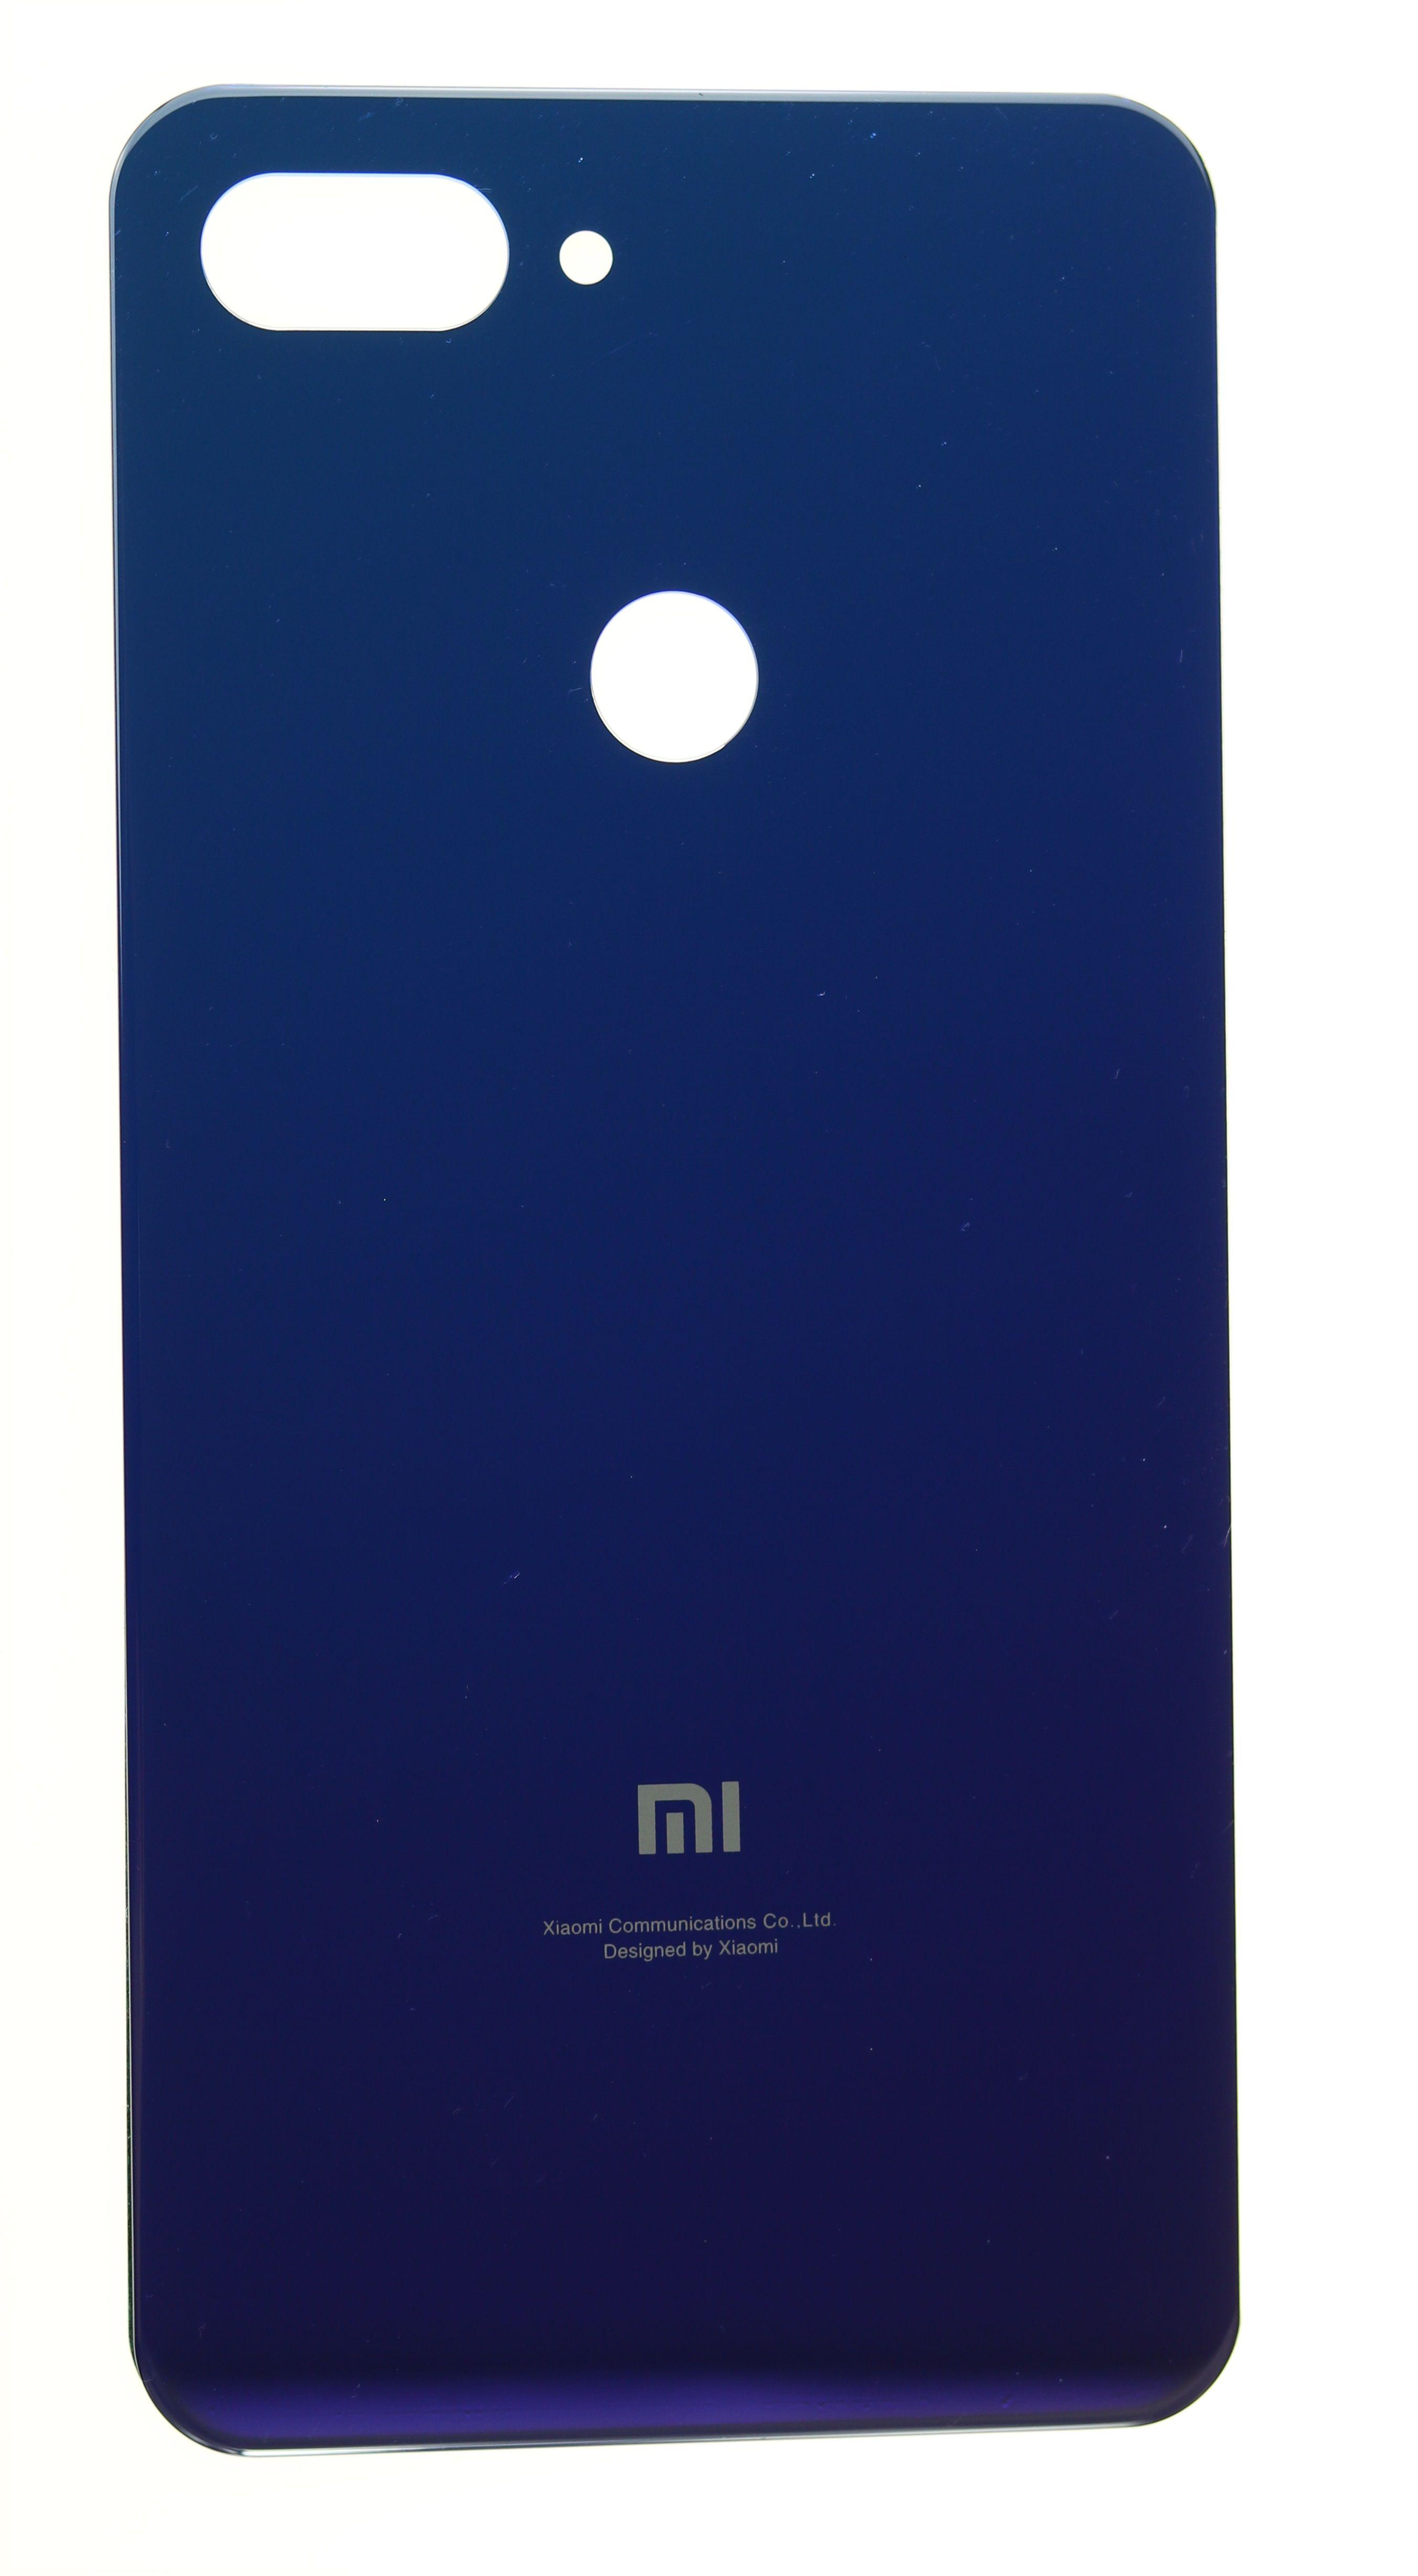 Battery cover Xiaomi Mi 8 lite Aurora blue ( blue )